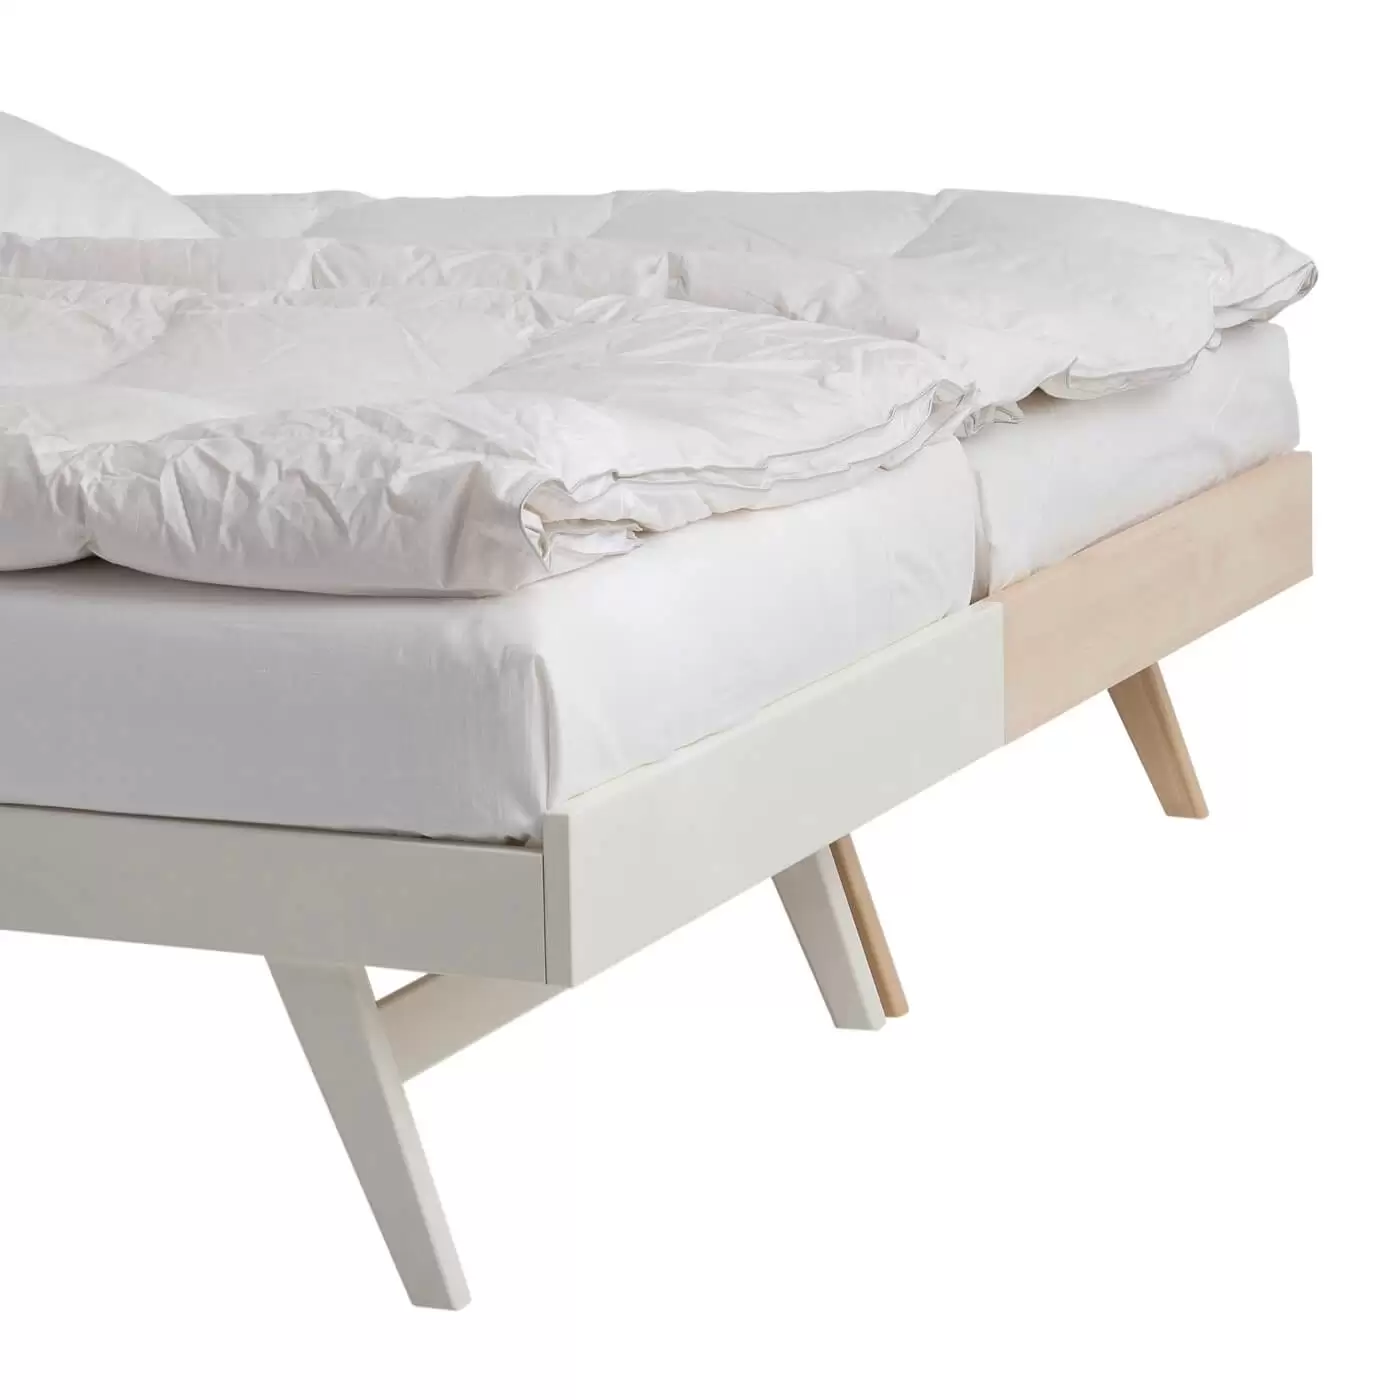 Łóżko na nóżkach NOTTE. Przybliżony fragment widoku na wysokie skośne nóżki złączonych, stojące razem obok siebie łóżek. Jedno łóżko z drewna brzozy, drugie z drewna brzozy lakierowanej na kolor biały